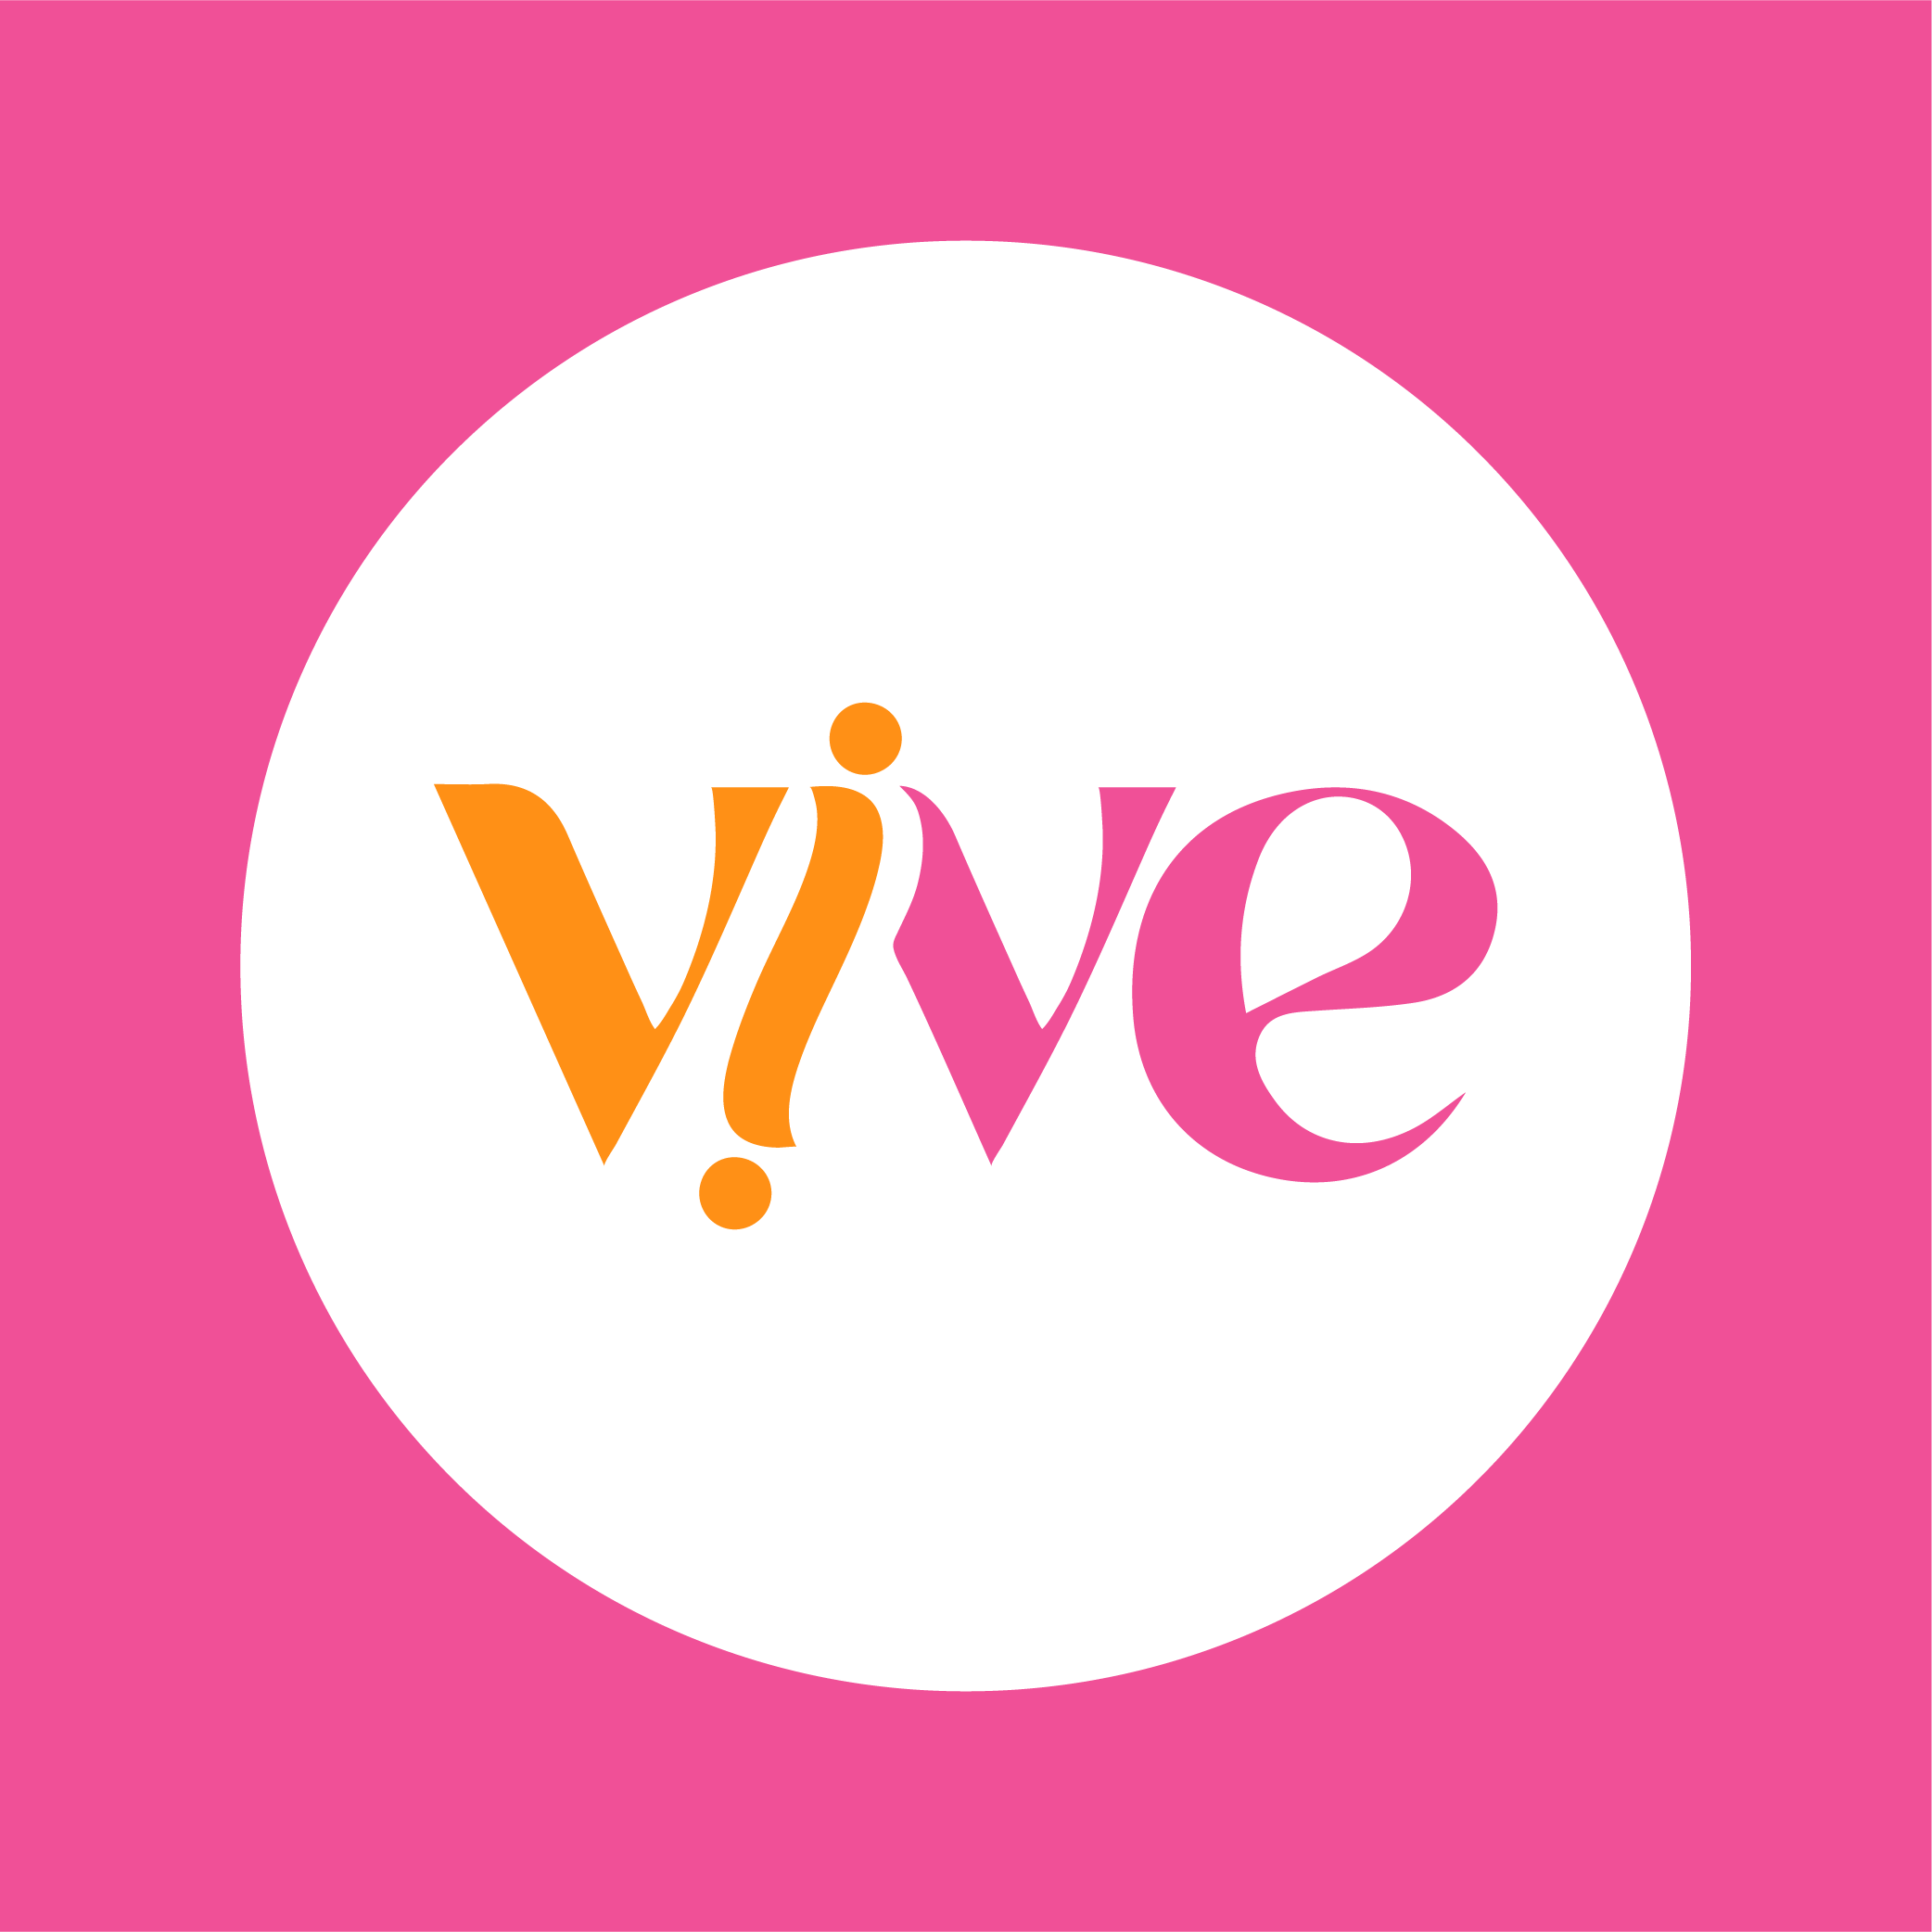 The New Era of Vive Cosmetics